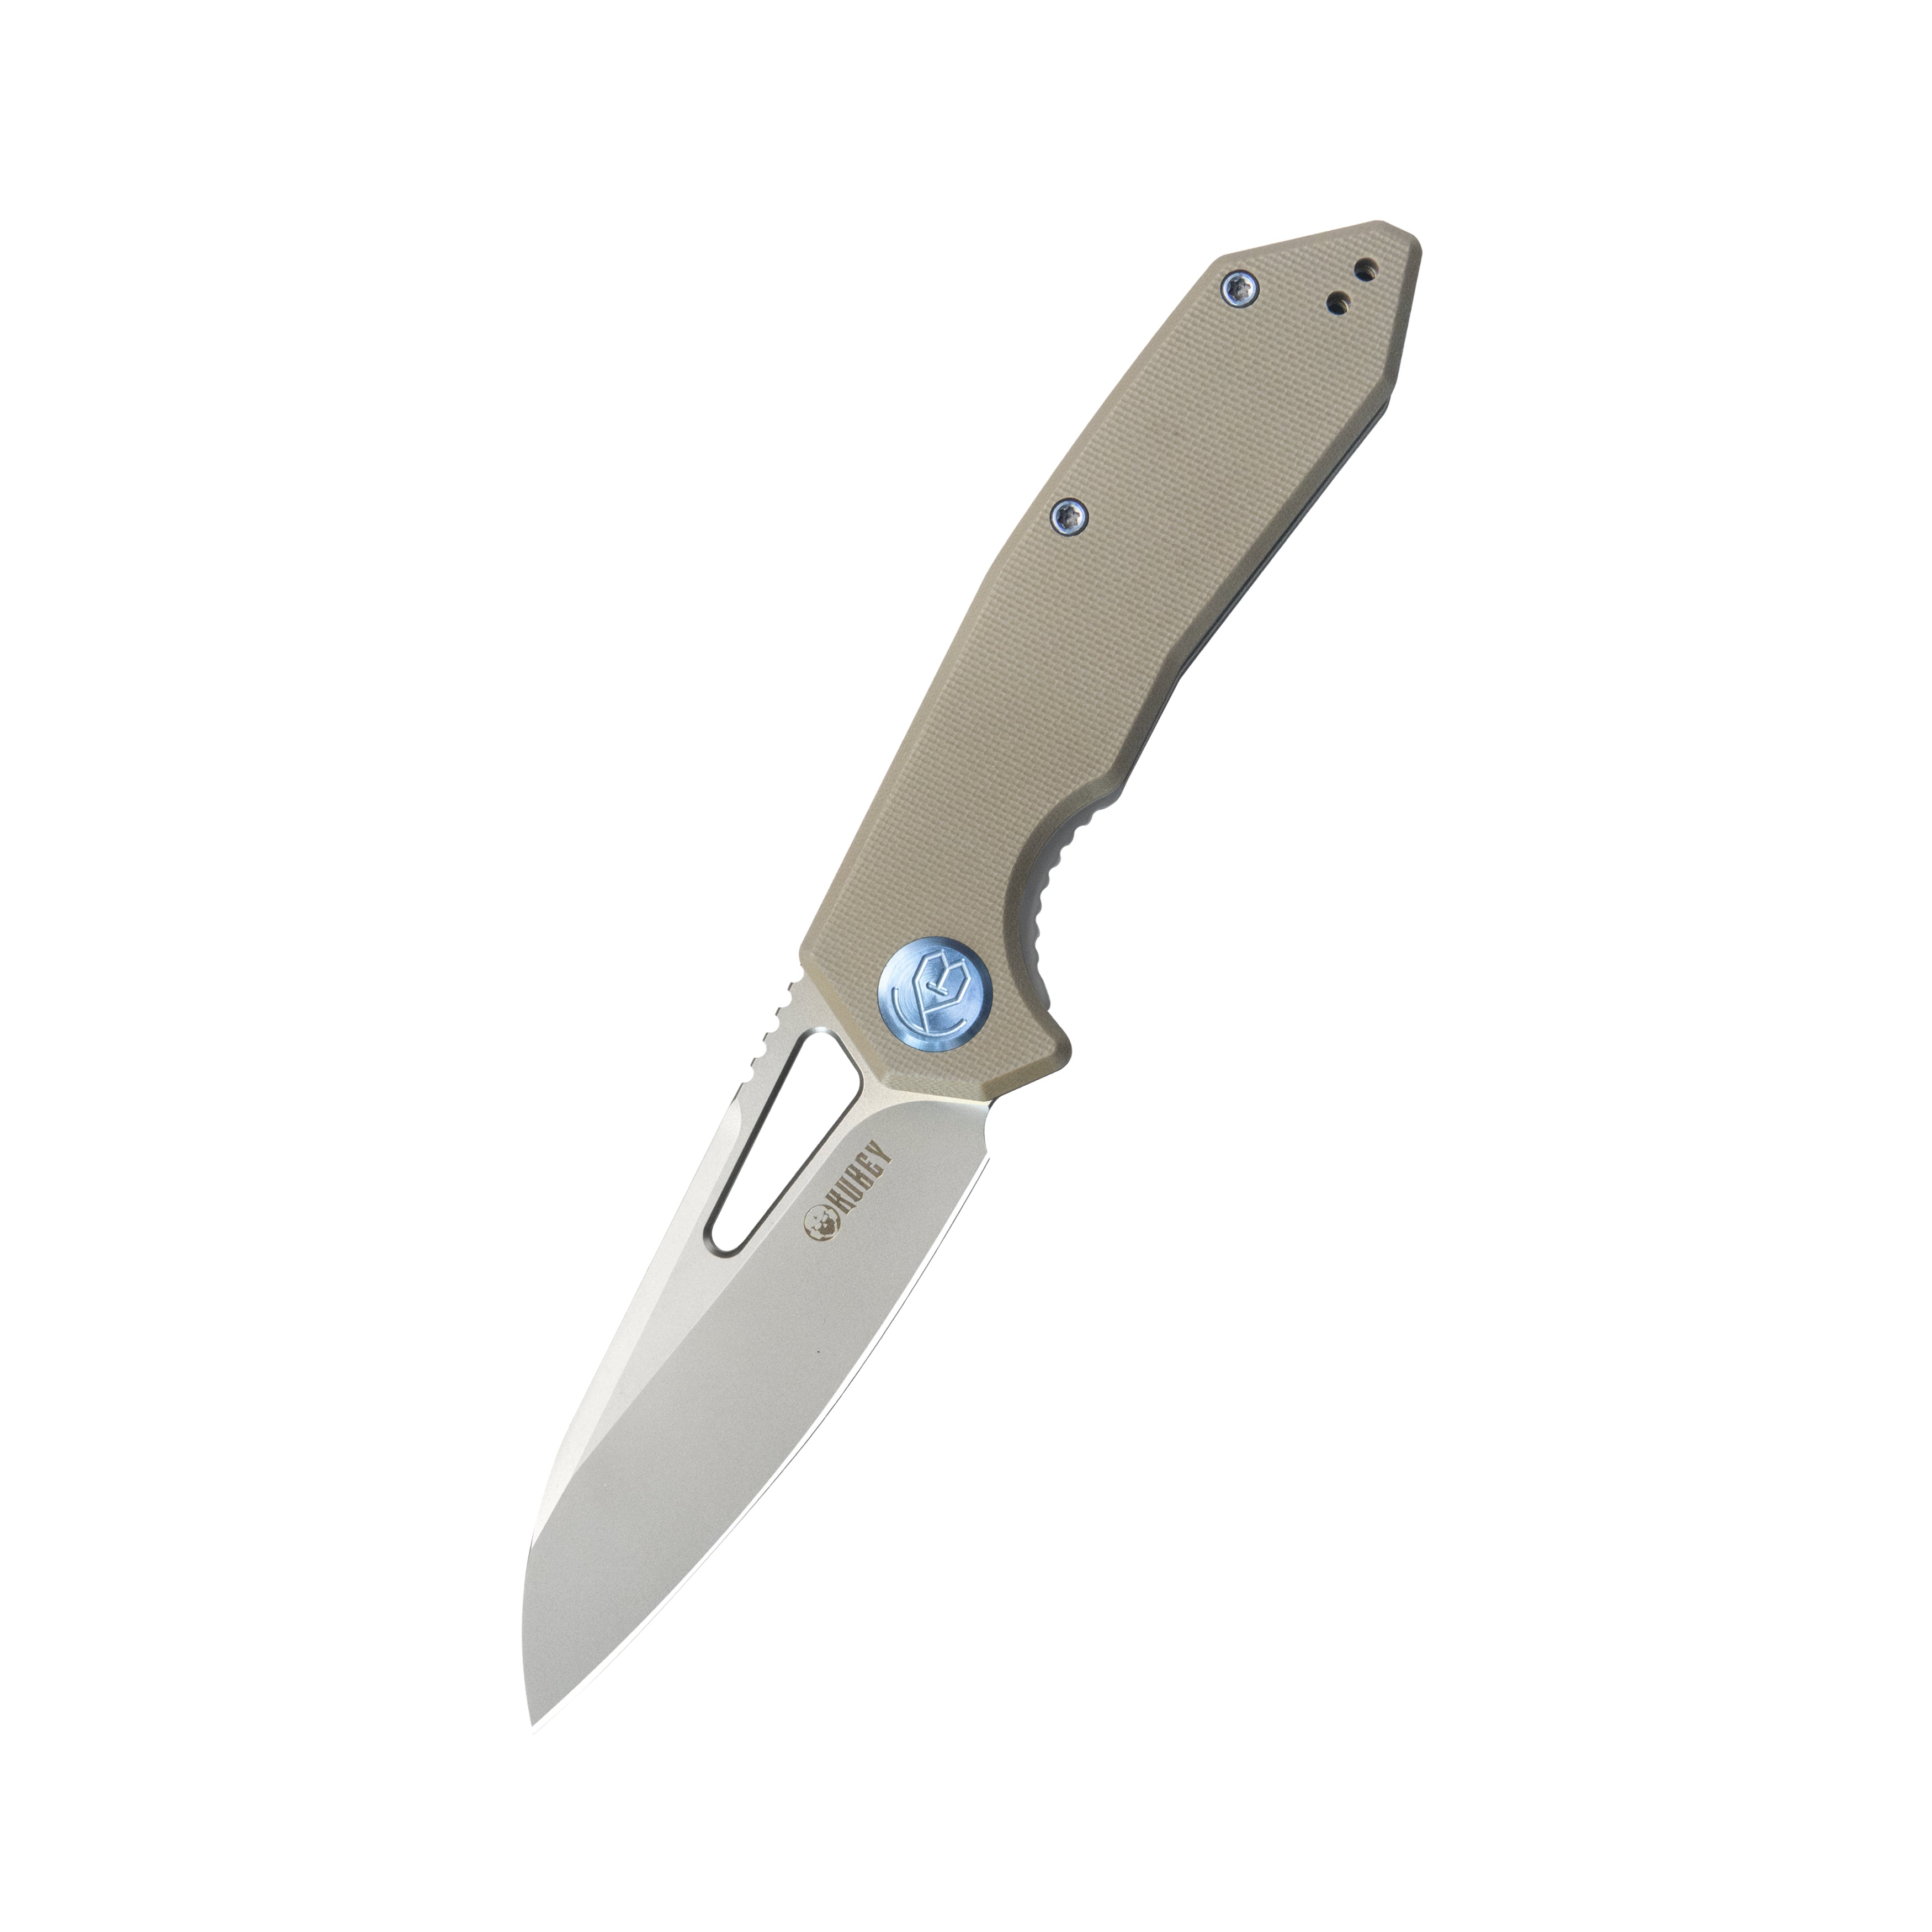 Kubey Vagrant Liner Lock Folding Knife Tan G10 Handle 3.15" Sandblast M390 KB291T